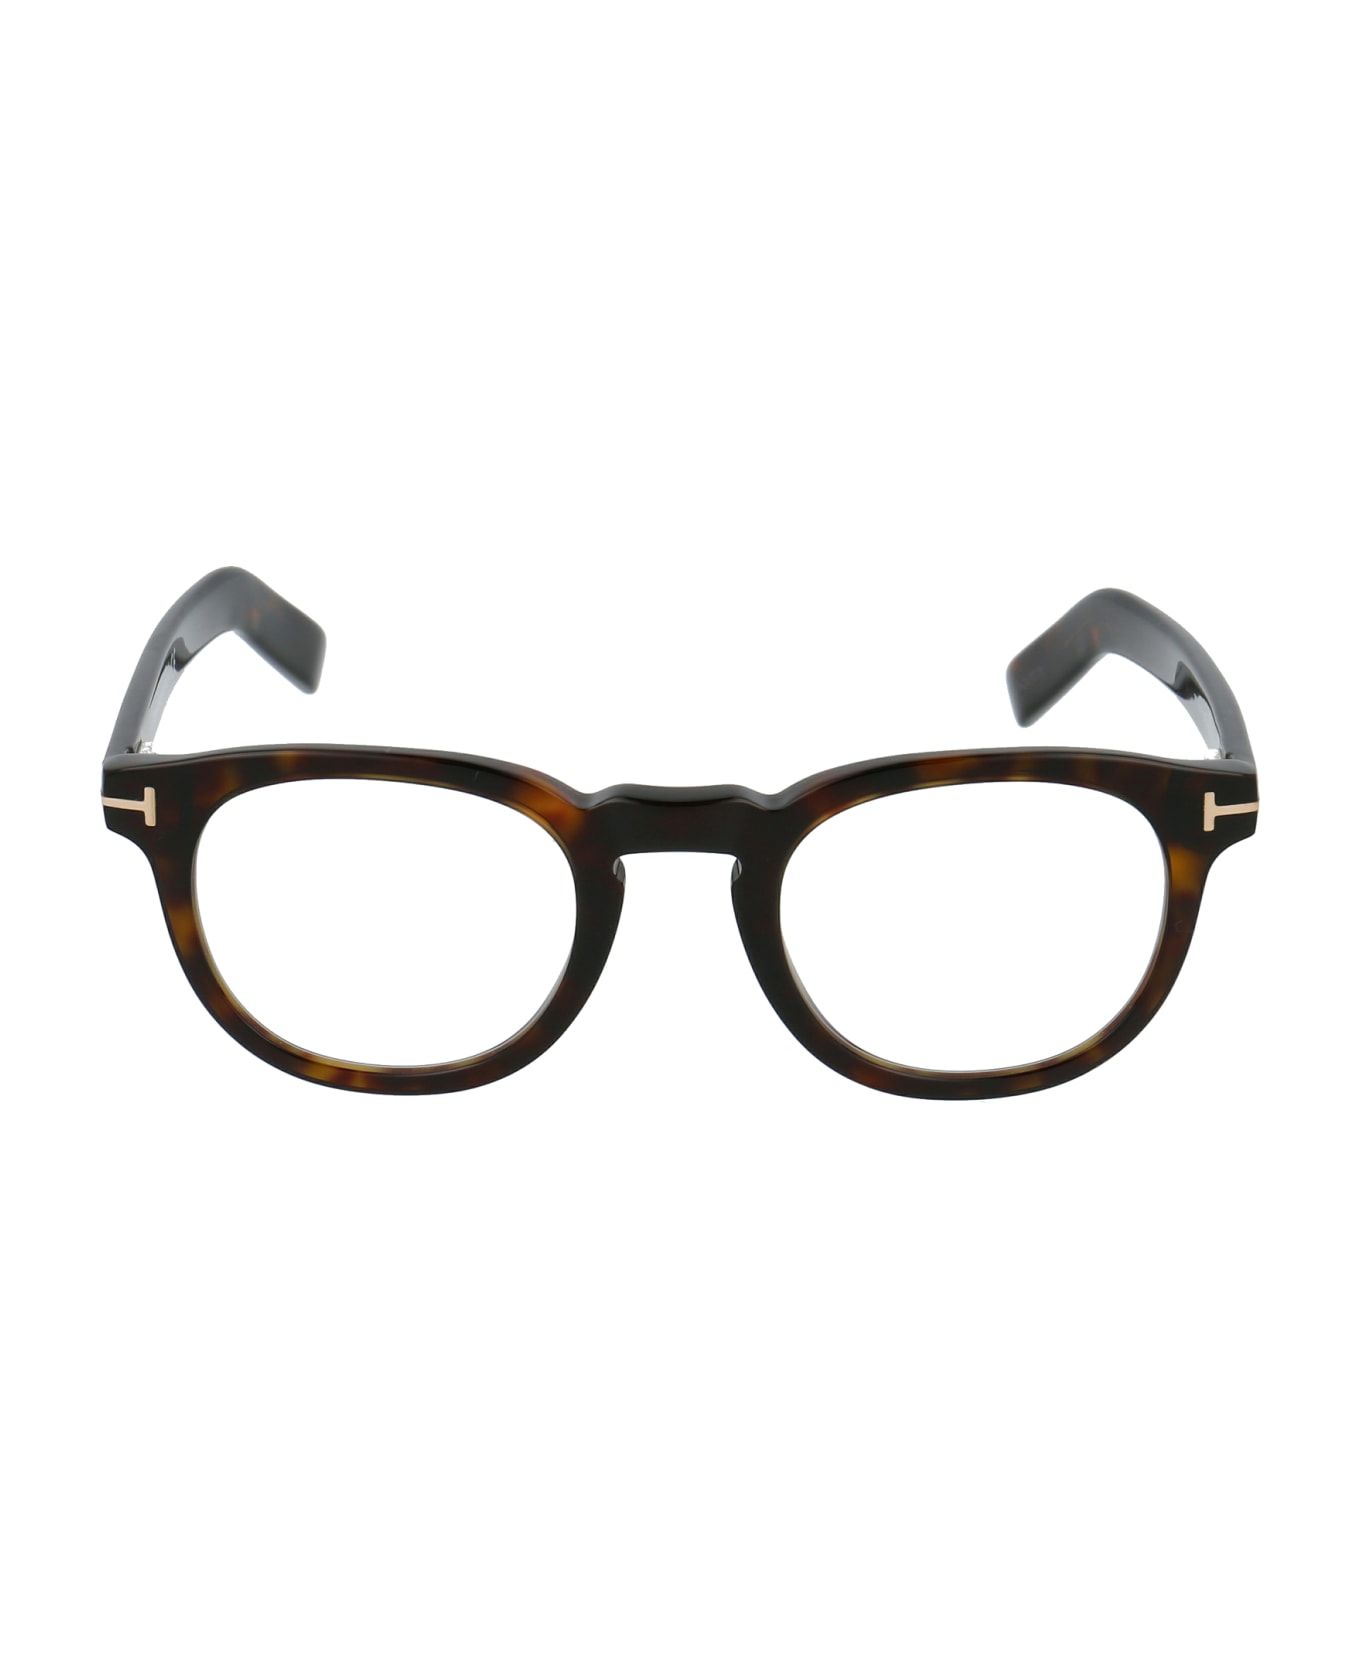 Tom Ford Eyewear Ft5629-b Glasses - 052 Avana Scura アイウェア